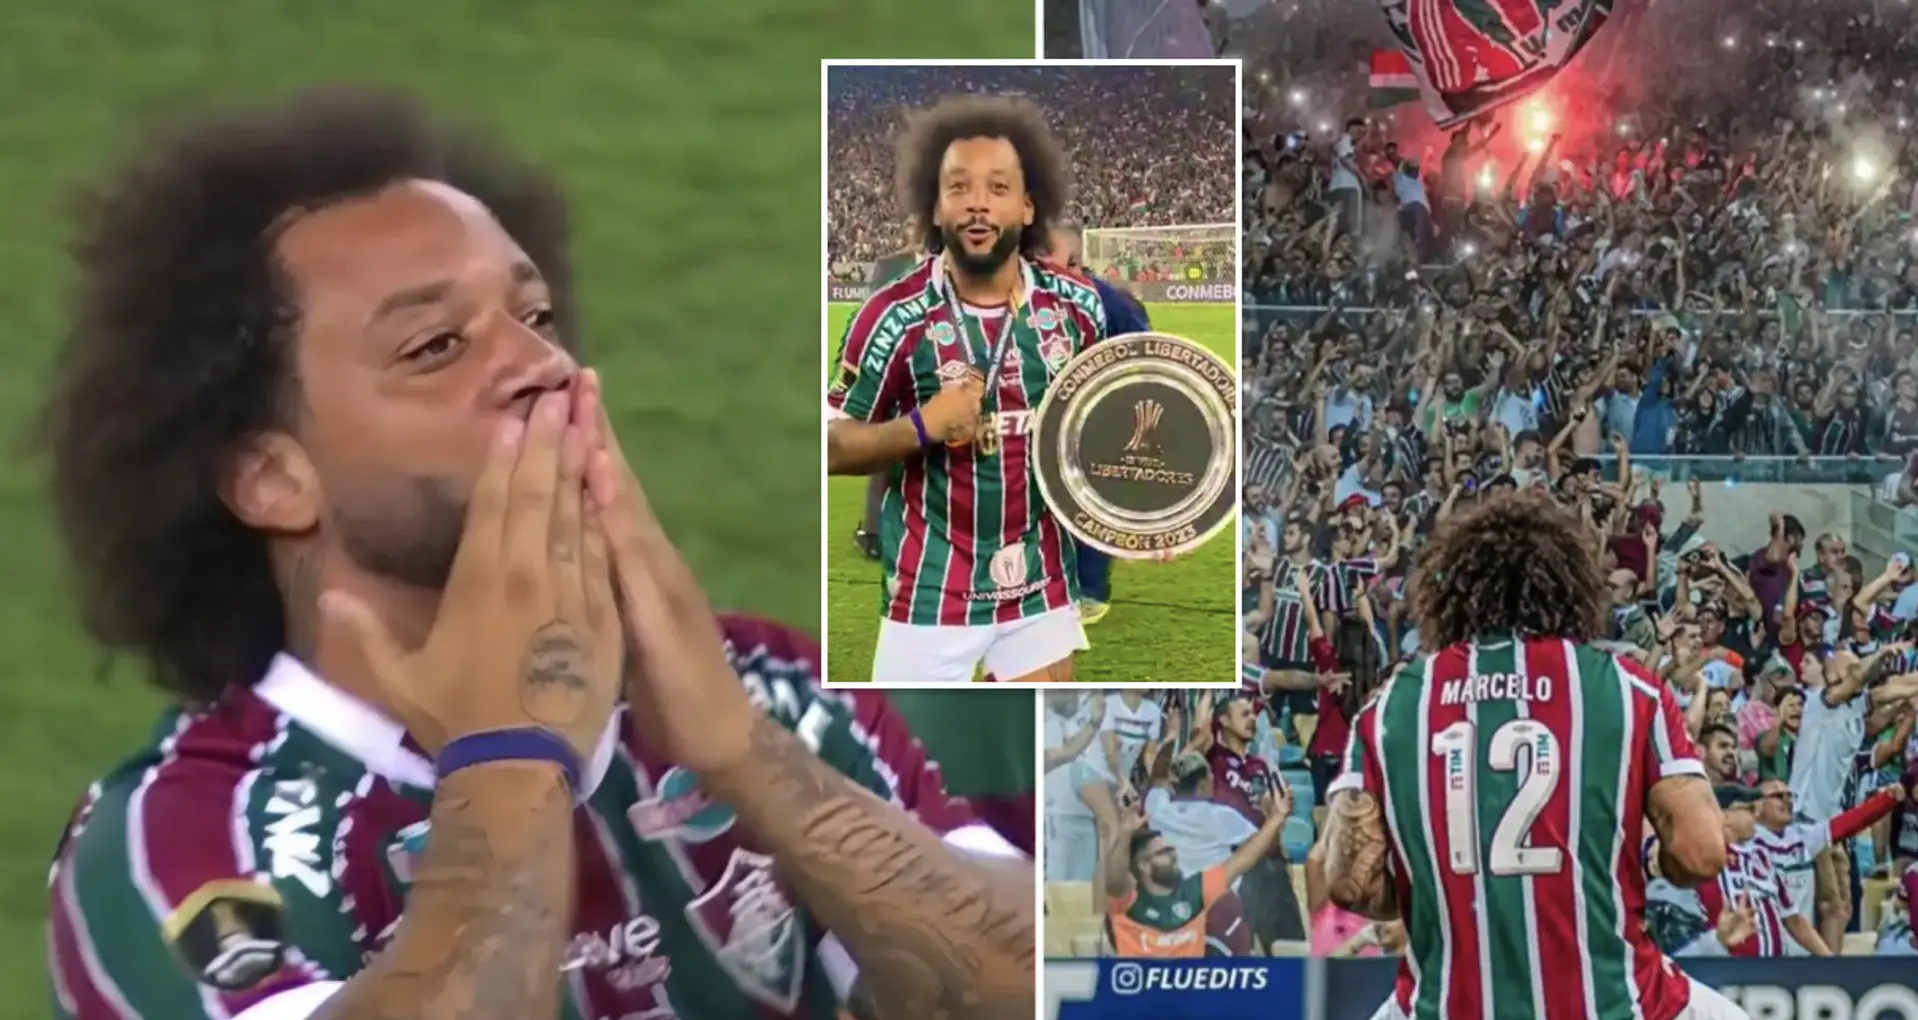 Marcelo en larmes alors qu'il célèbre son premier trophée en Copa Libertadores avec son club d'enfance de Fluminense